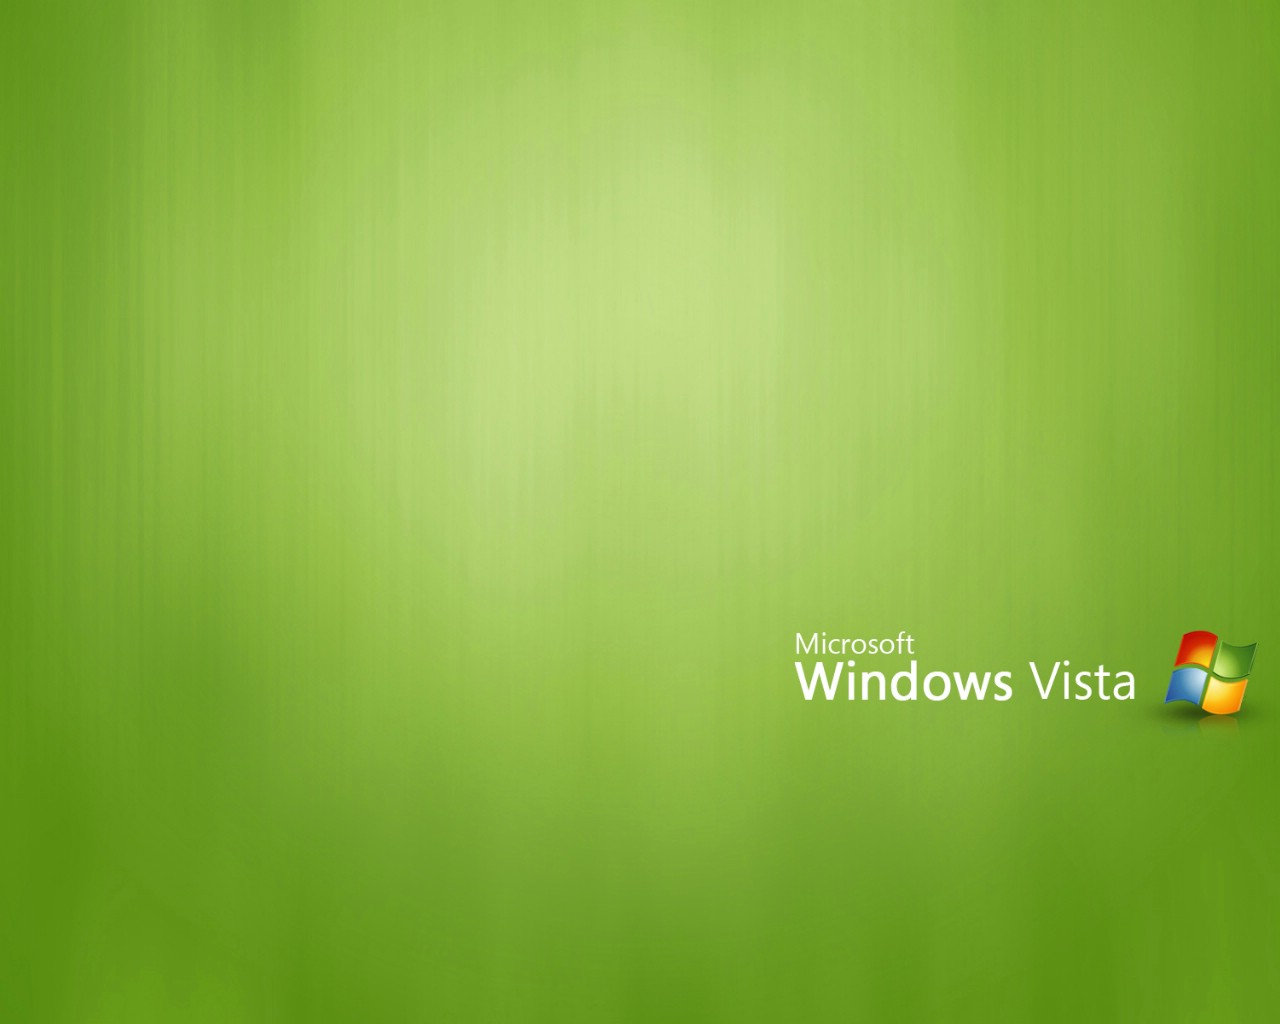 壁纸1280x1024Vista精选 2 壁纸37壁纸 Vista精选(2)壁纸 Vista精选(2)图片 Vista精选(2)素材 系统壁纸 系统图库 系统图片素材桌面壁纸